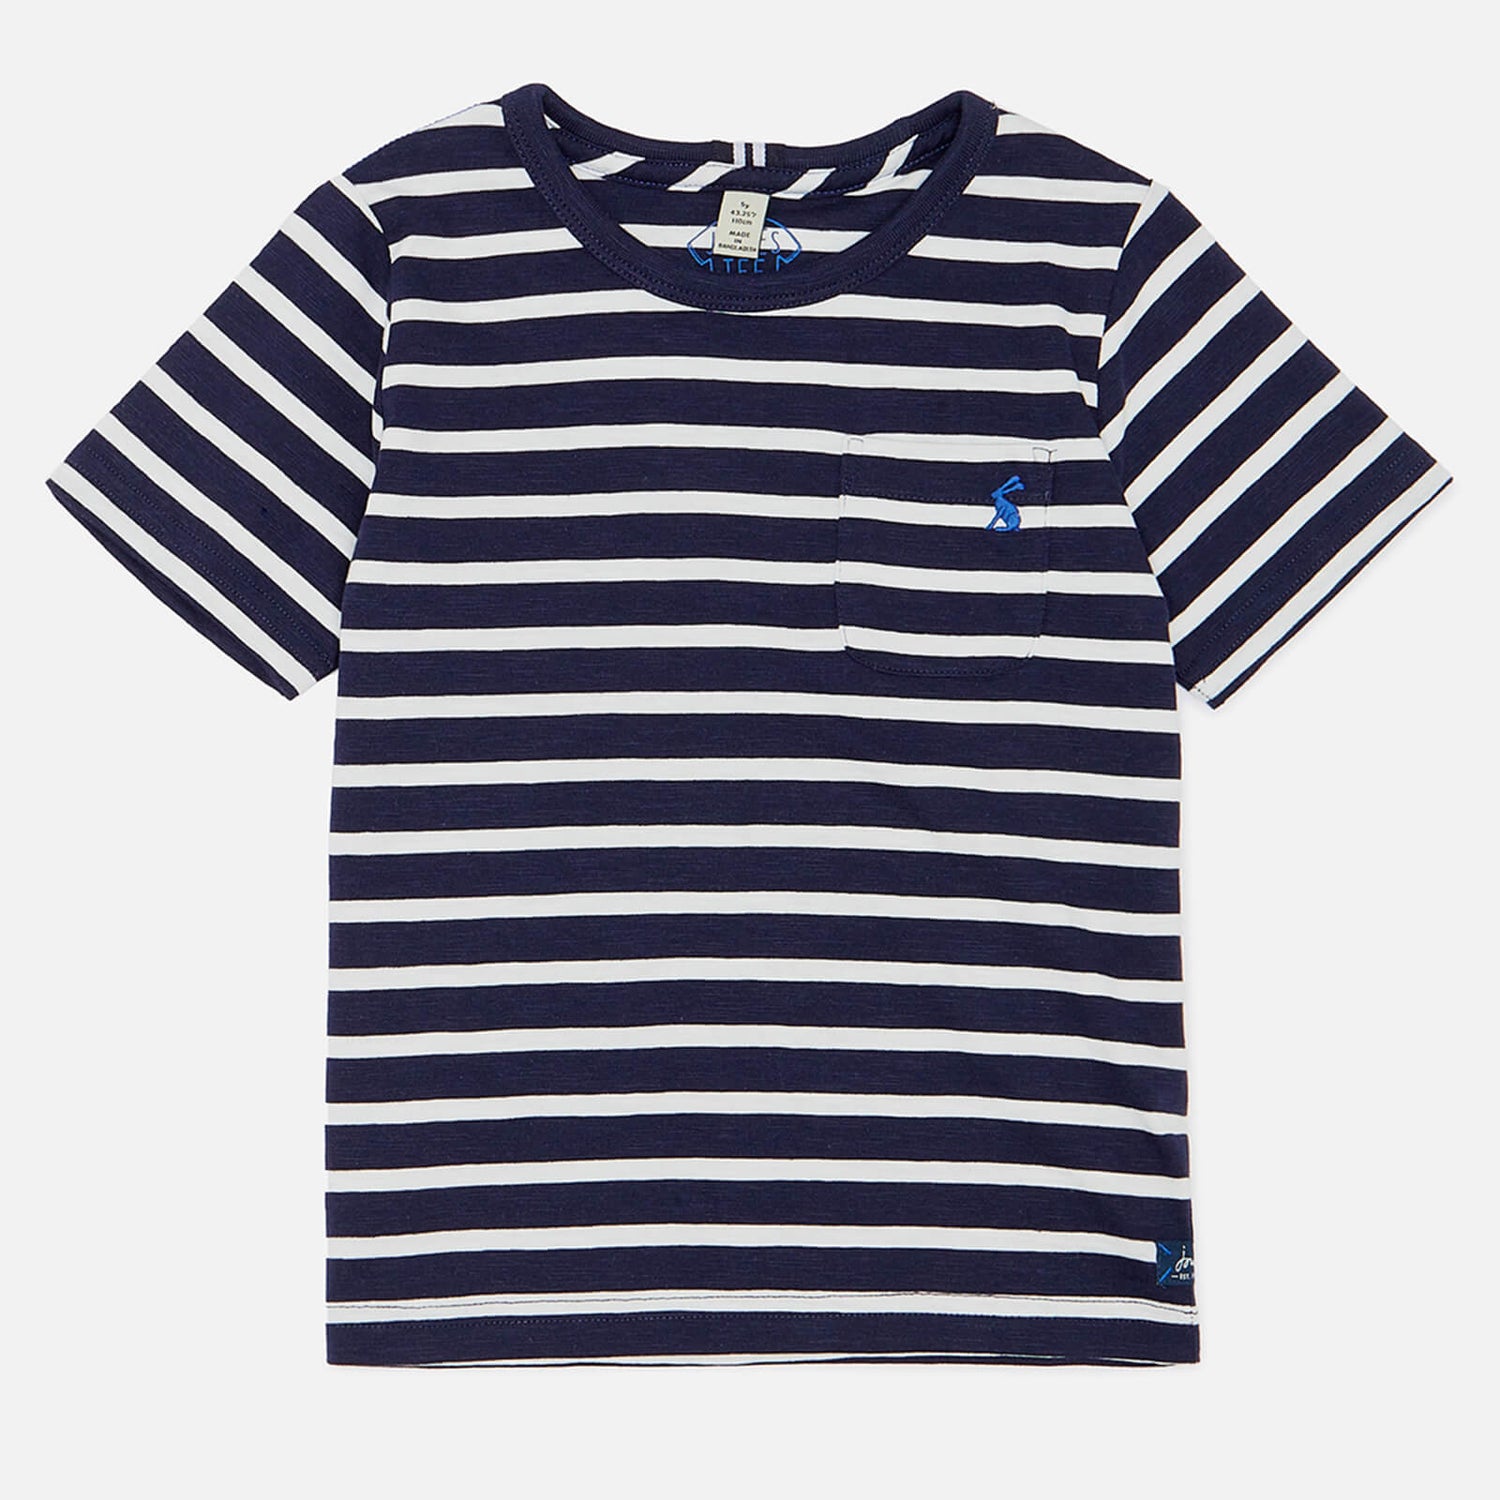 Joules Boys' Laundered Stripe T-Shirt - Navy White Stripe